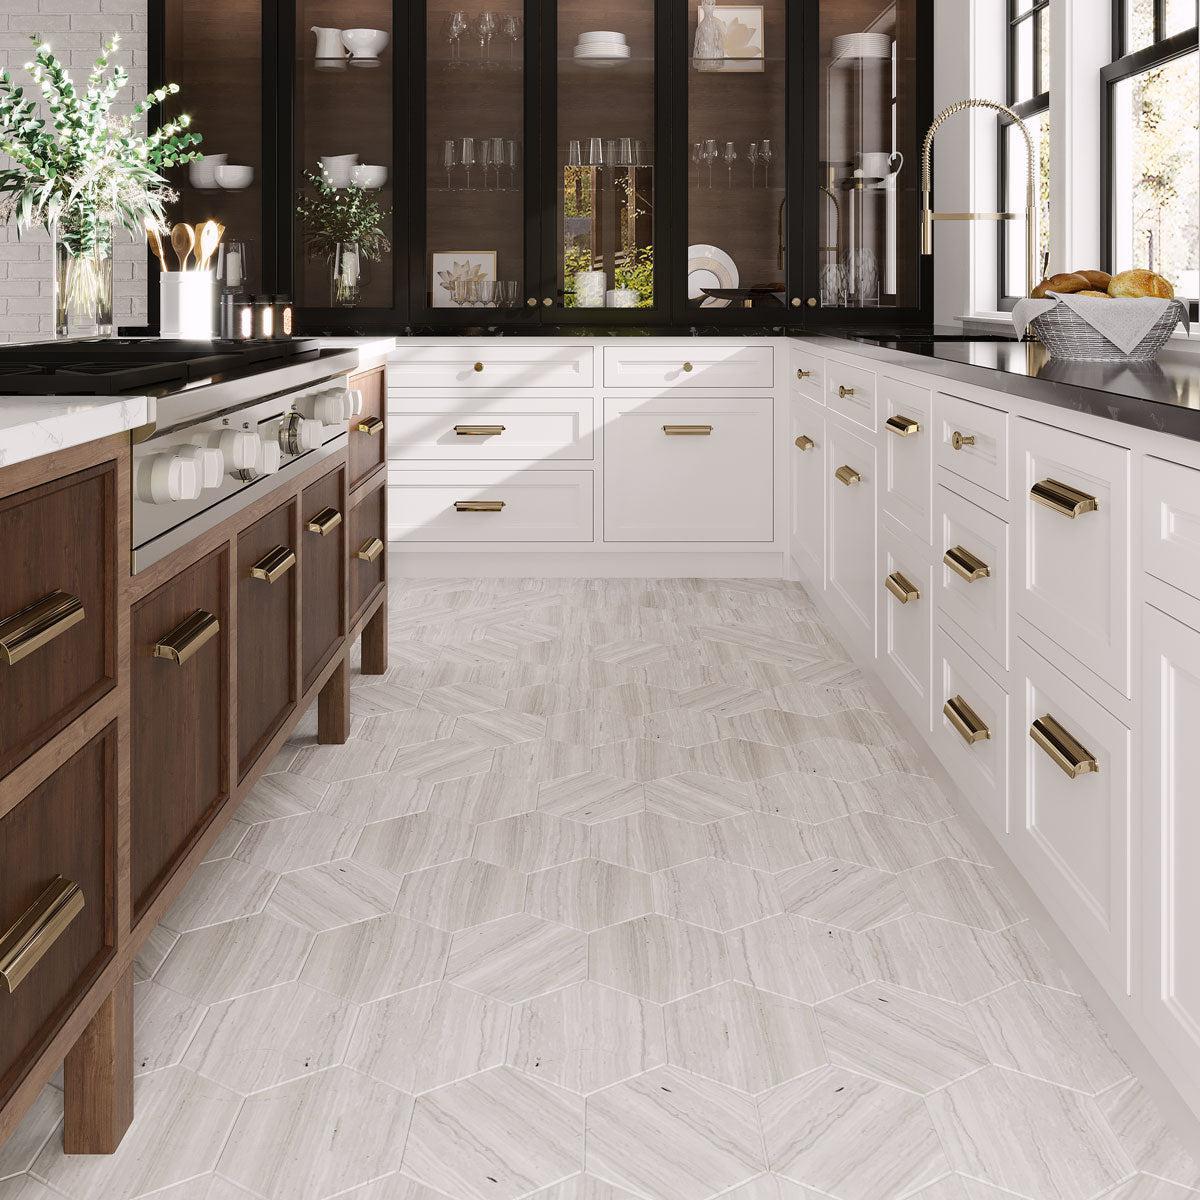 Wooden beige marble hexagon kitchen floor